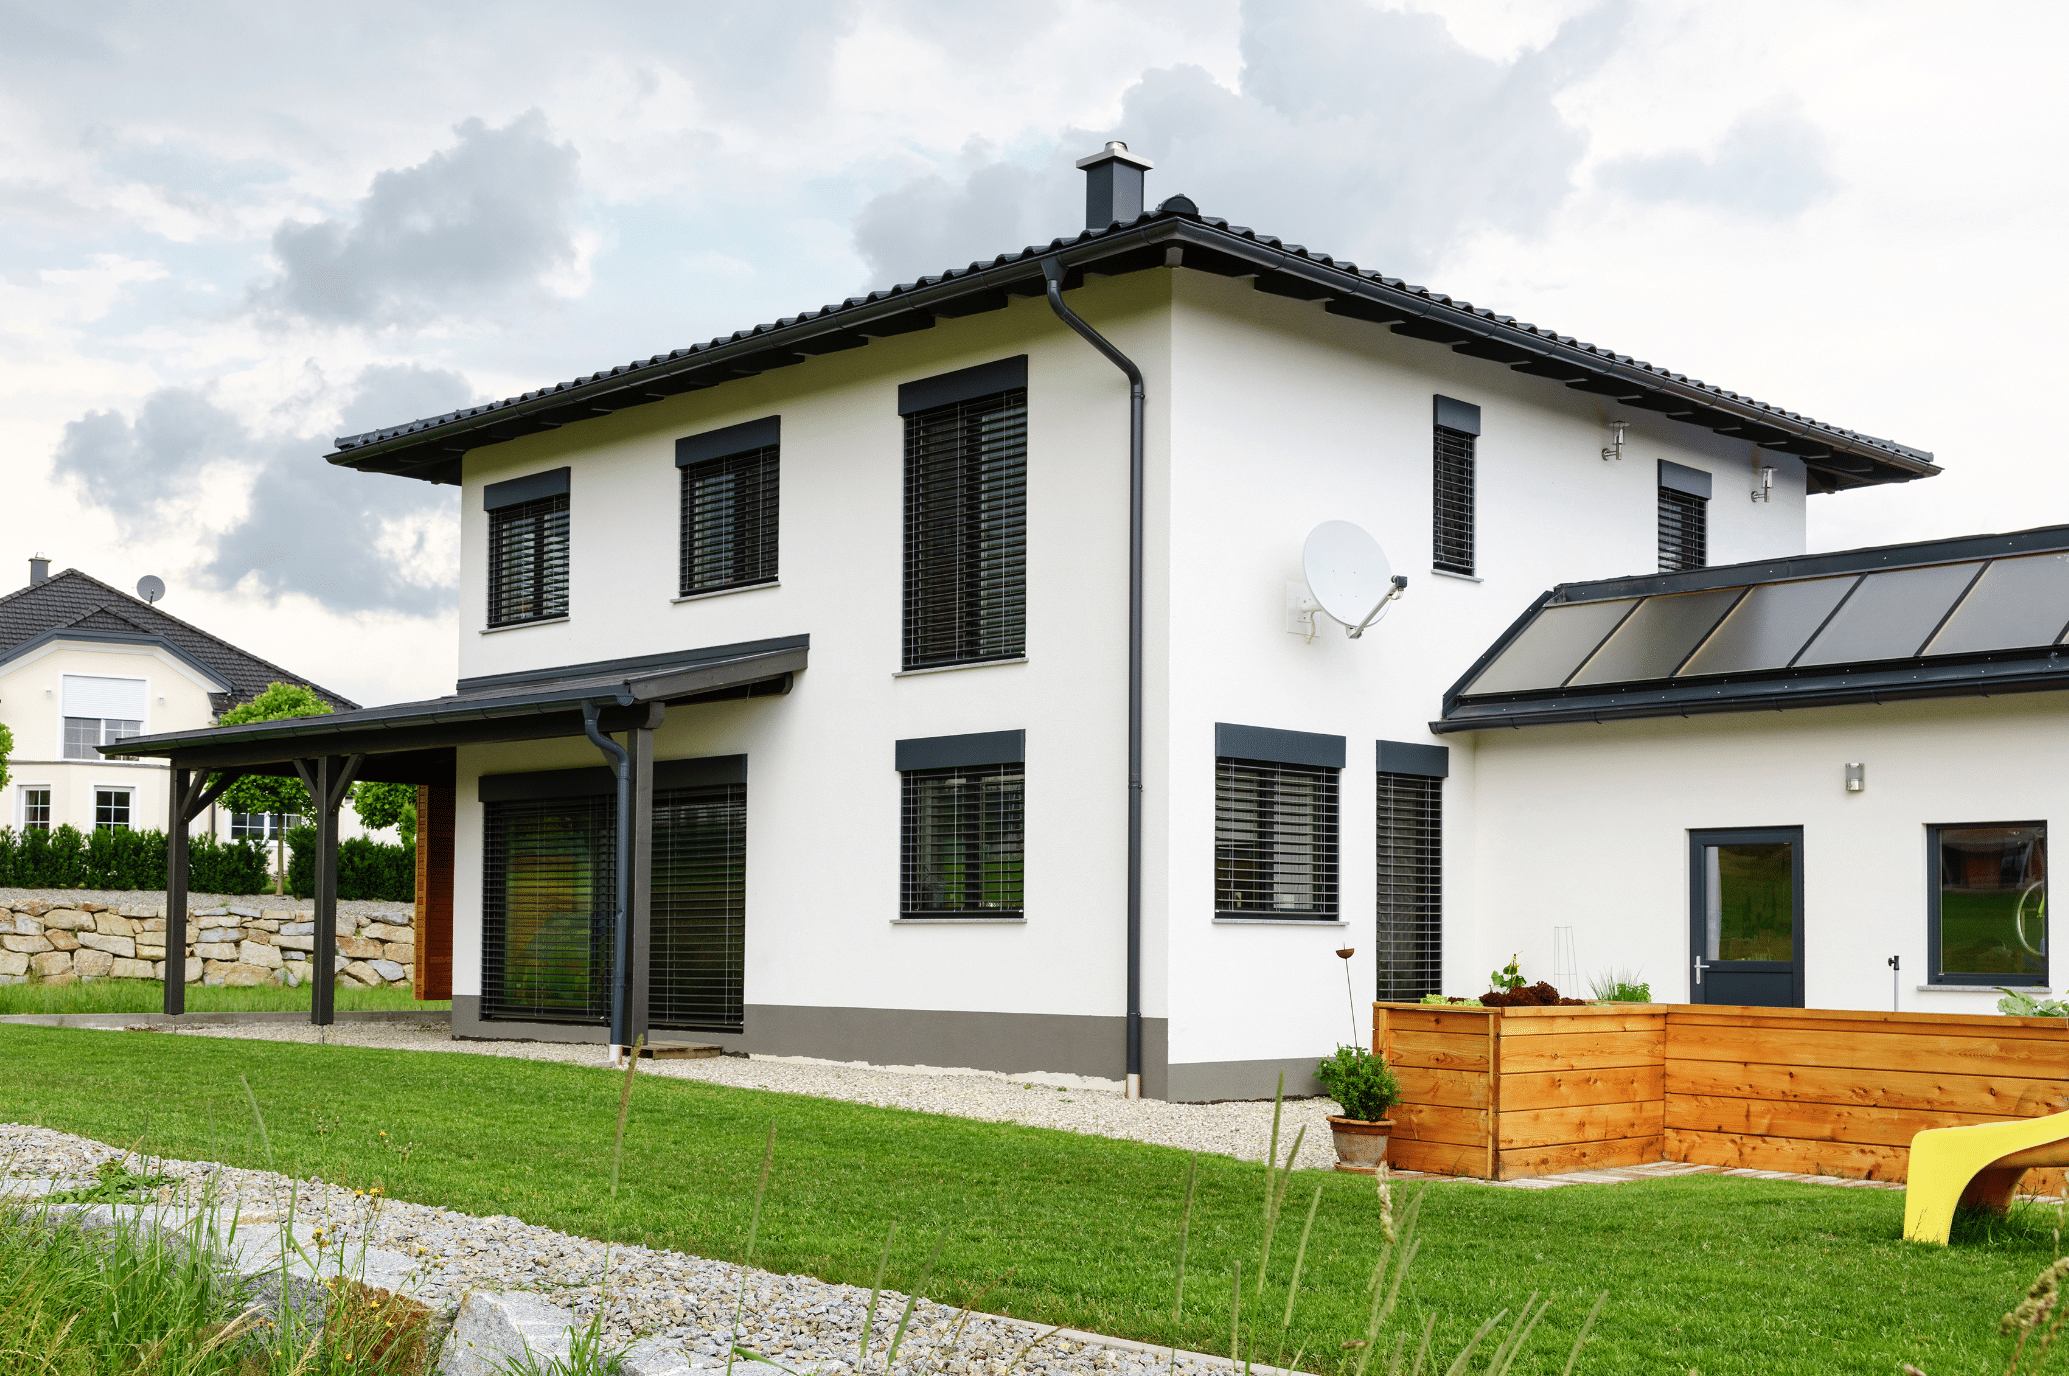 Newo Sonnen- und Insektenschutz zeigt ein weisses Einfamilienhaus mit vielen Fenstern an denen Rollläden als Sonnenschutz montiert sind und eine überdachte Terrasse mit schwarzen Rollläden an den Terrassentüren.